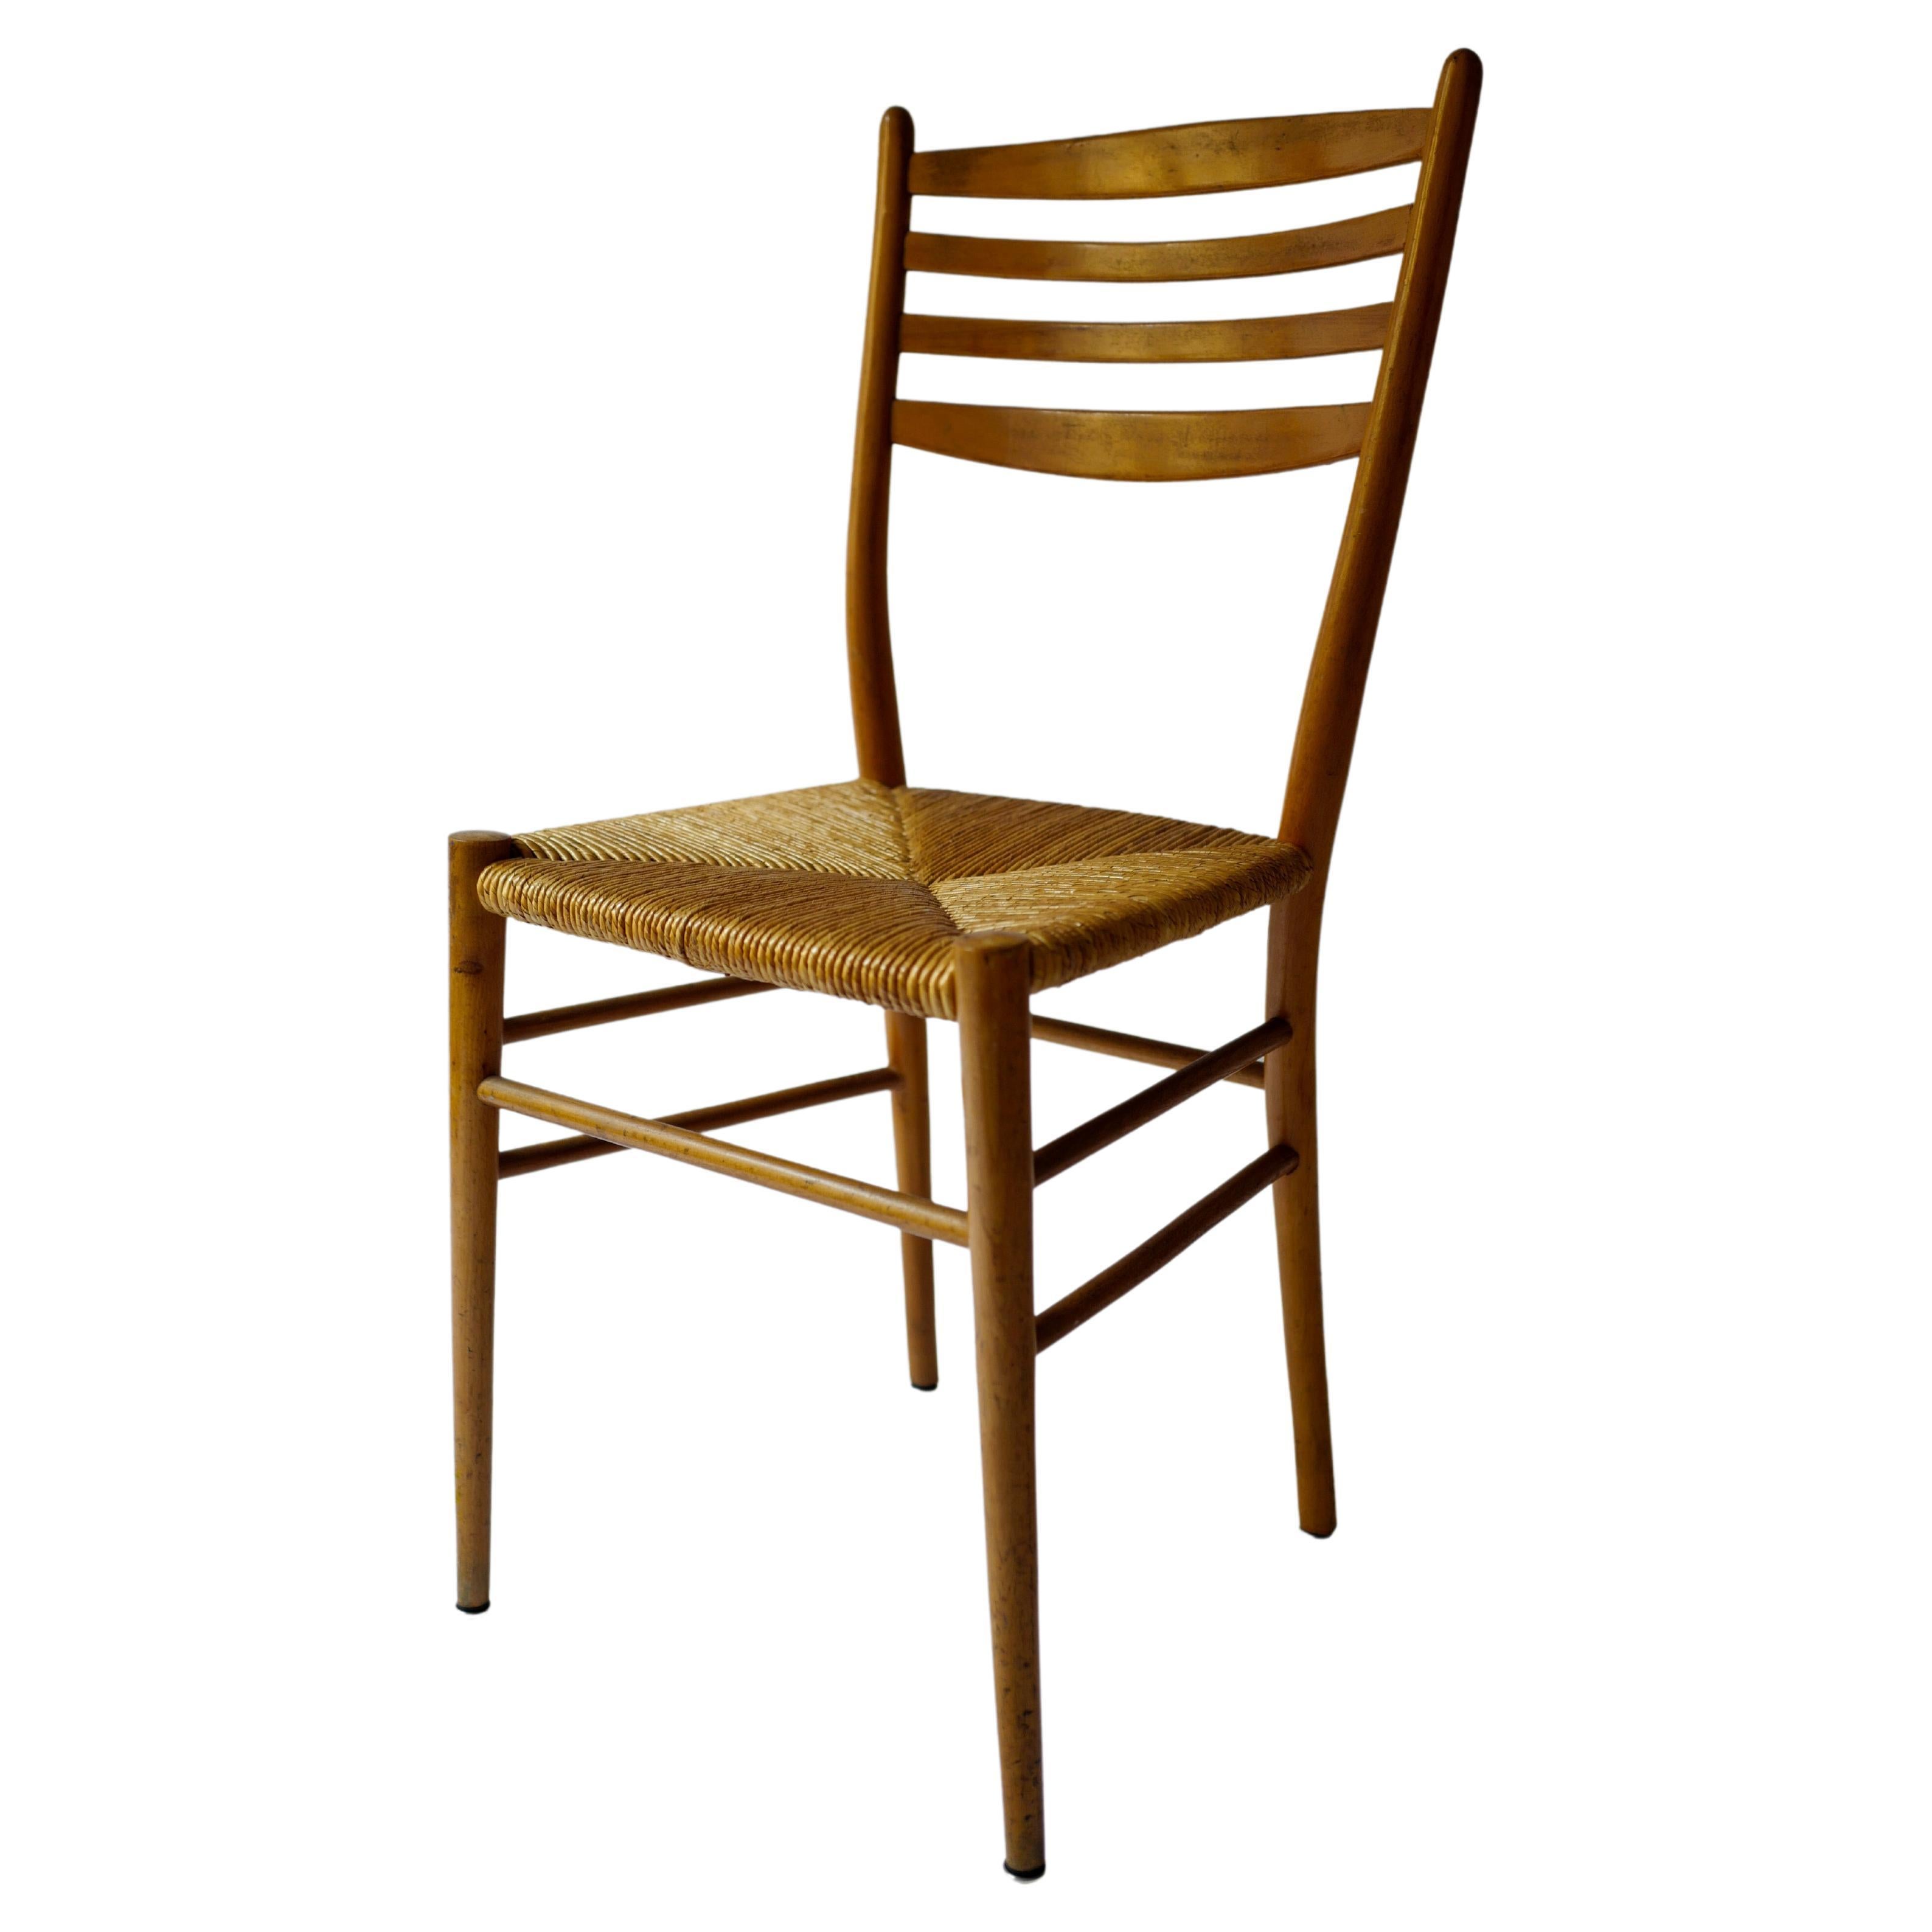 Chaise de style Gio Ponti en osier et bois tissé des années 1950